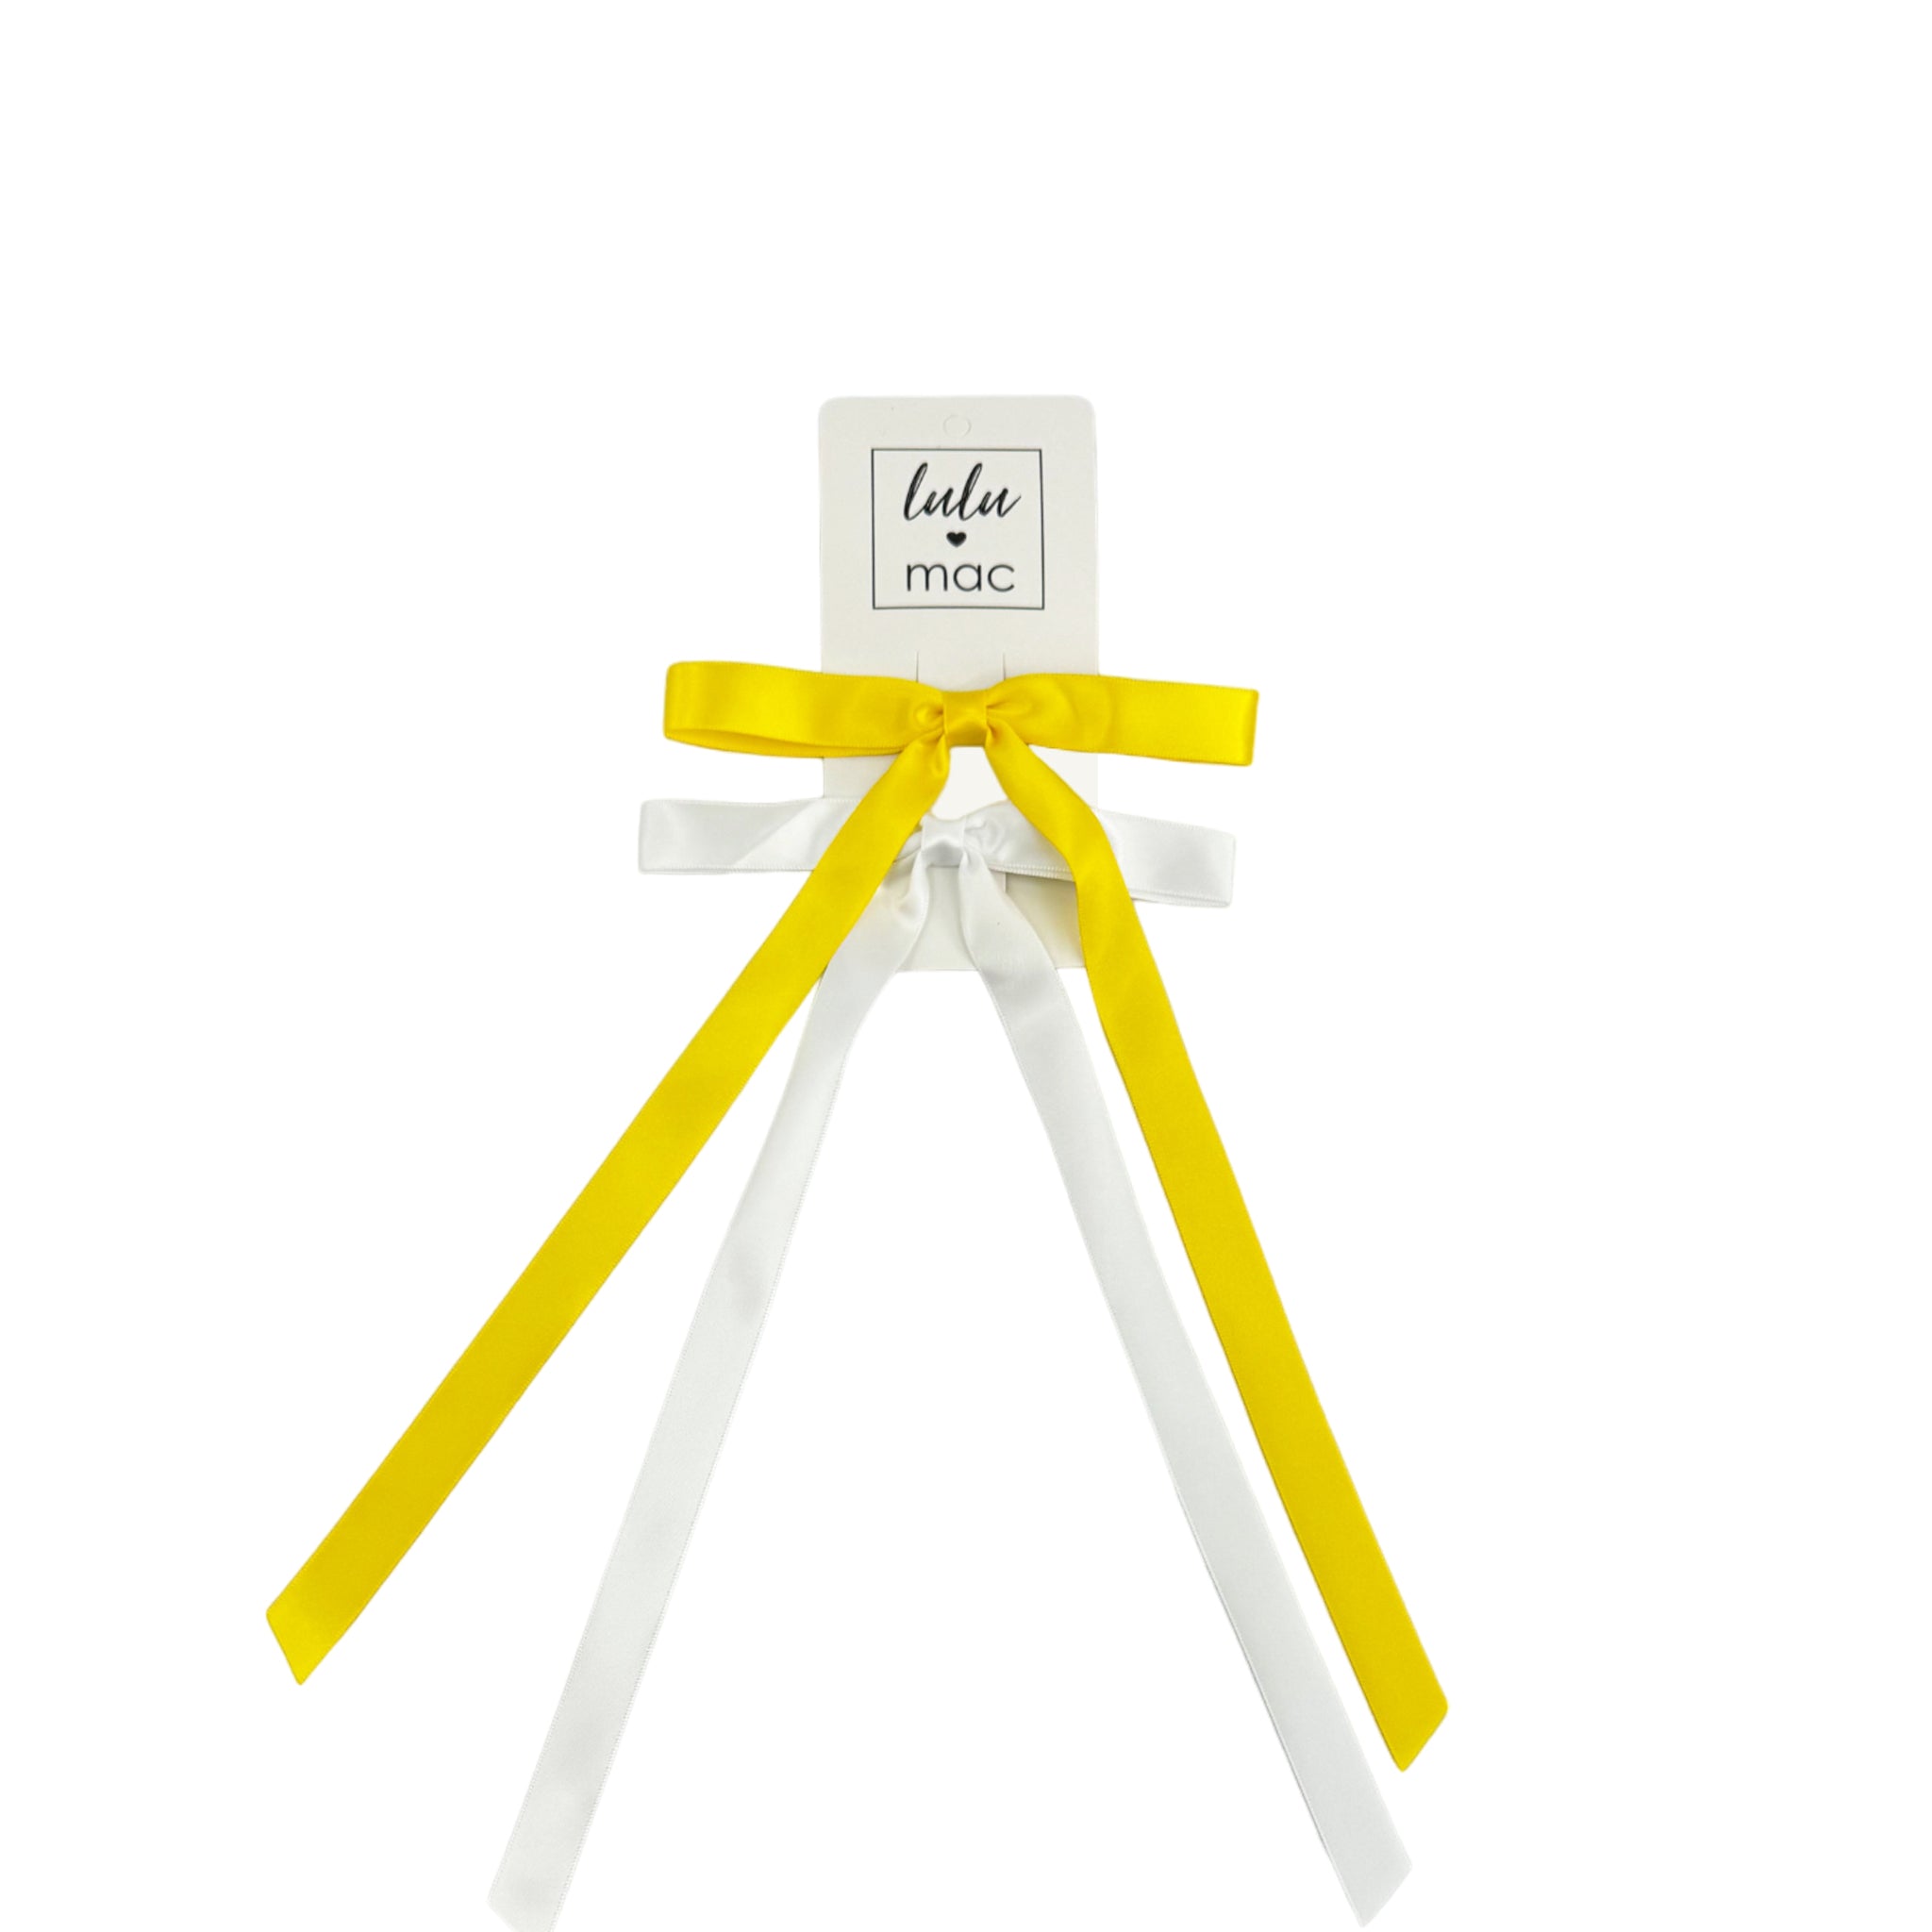 DDS-7656 Satin Mini Double Bow Yellow/White